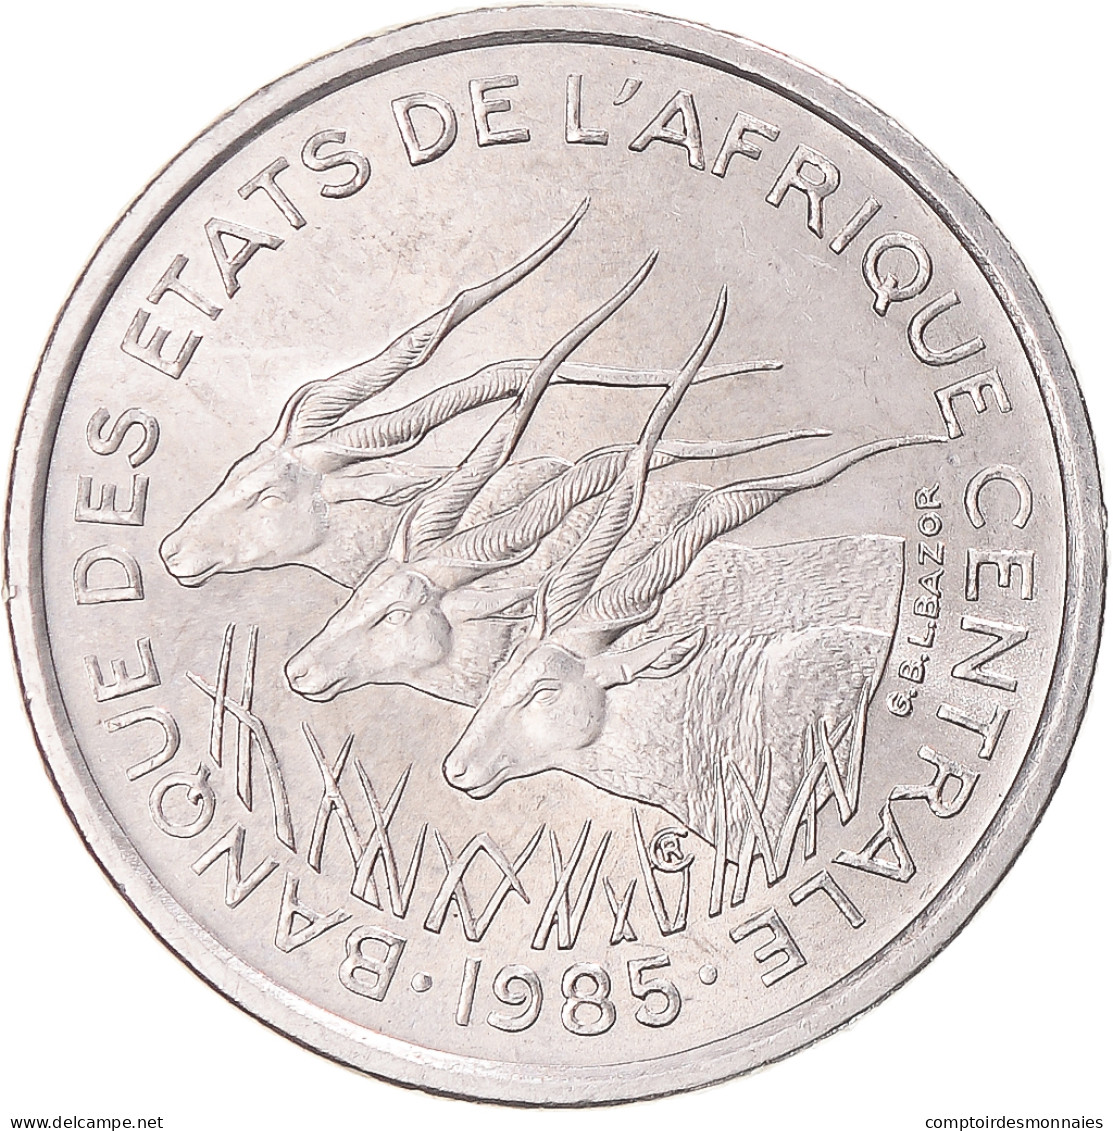 Monnaie, États De L'Afrique Centrale, 50 Francs, 1985 - Central African Republic